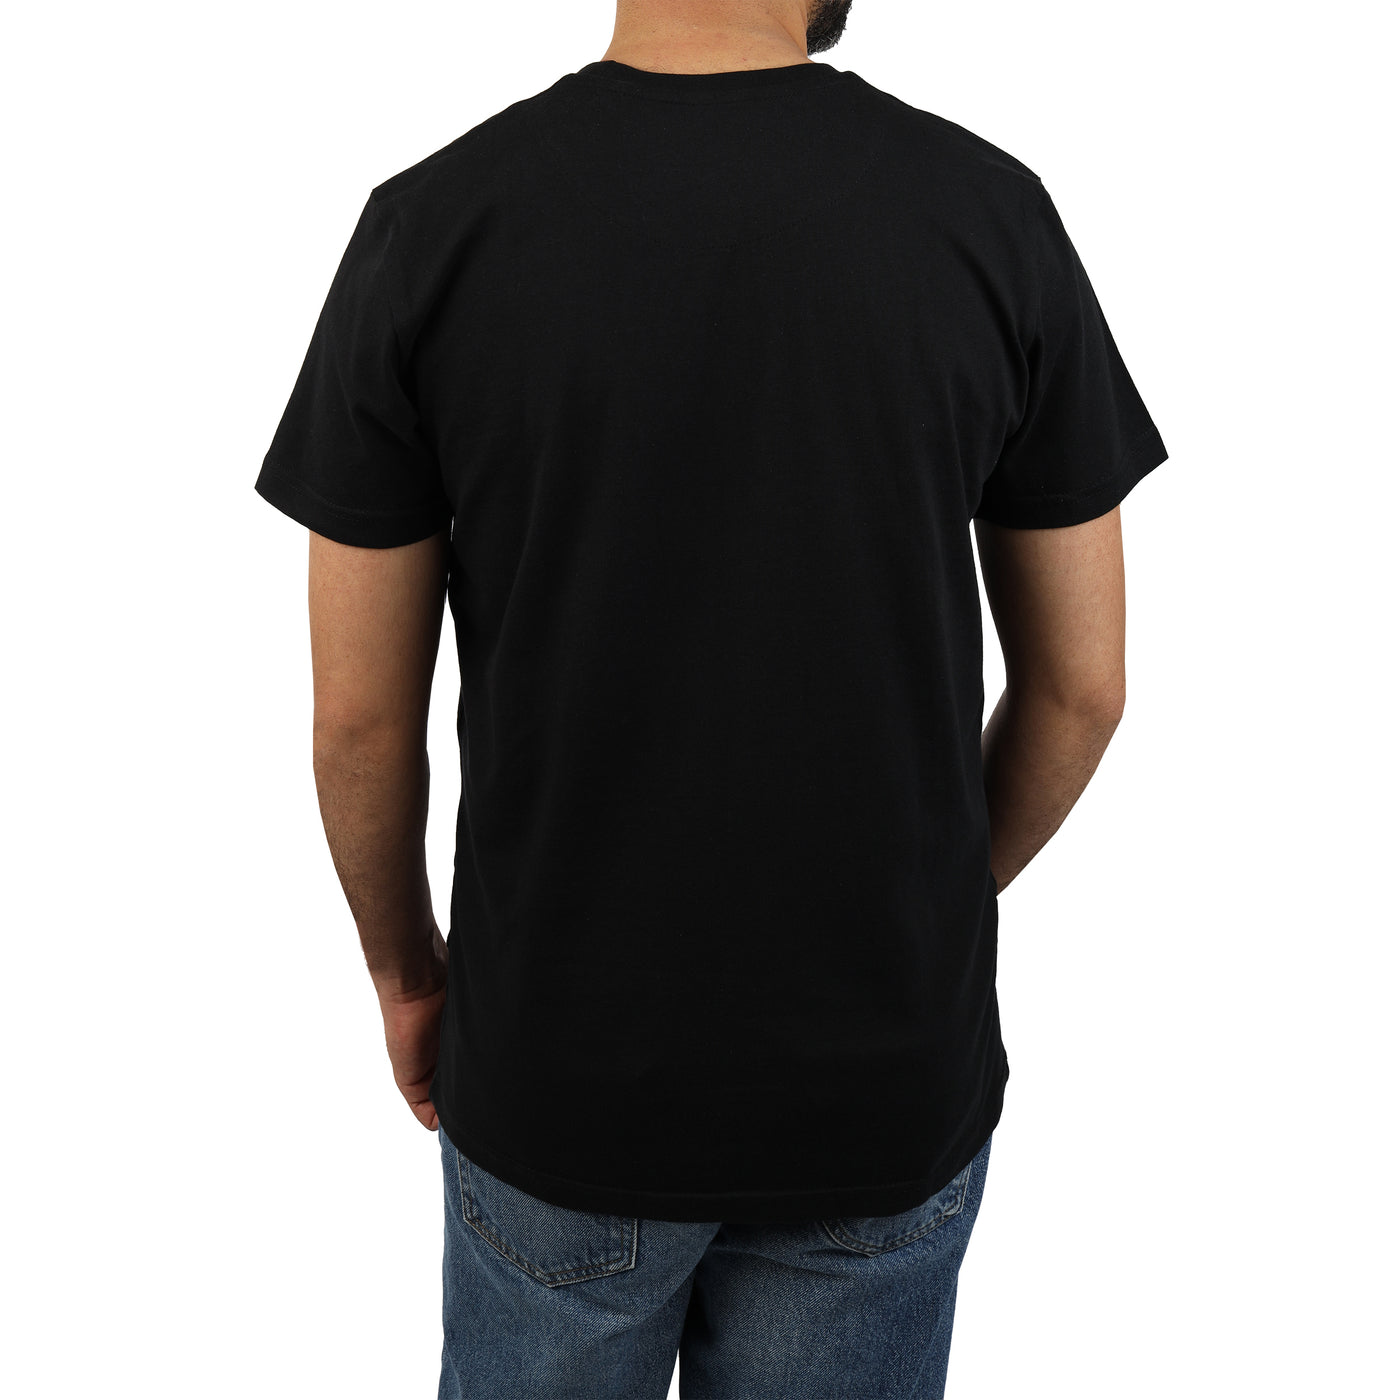 Black round T-shirt